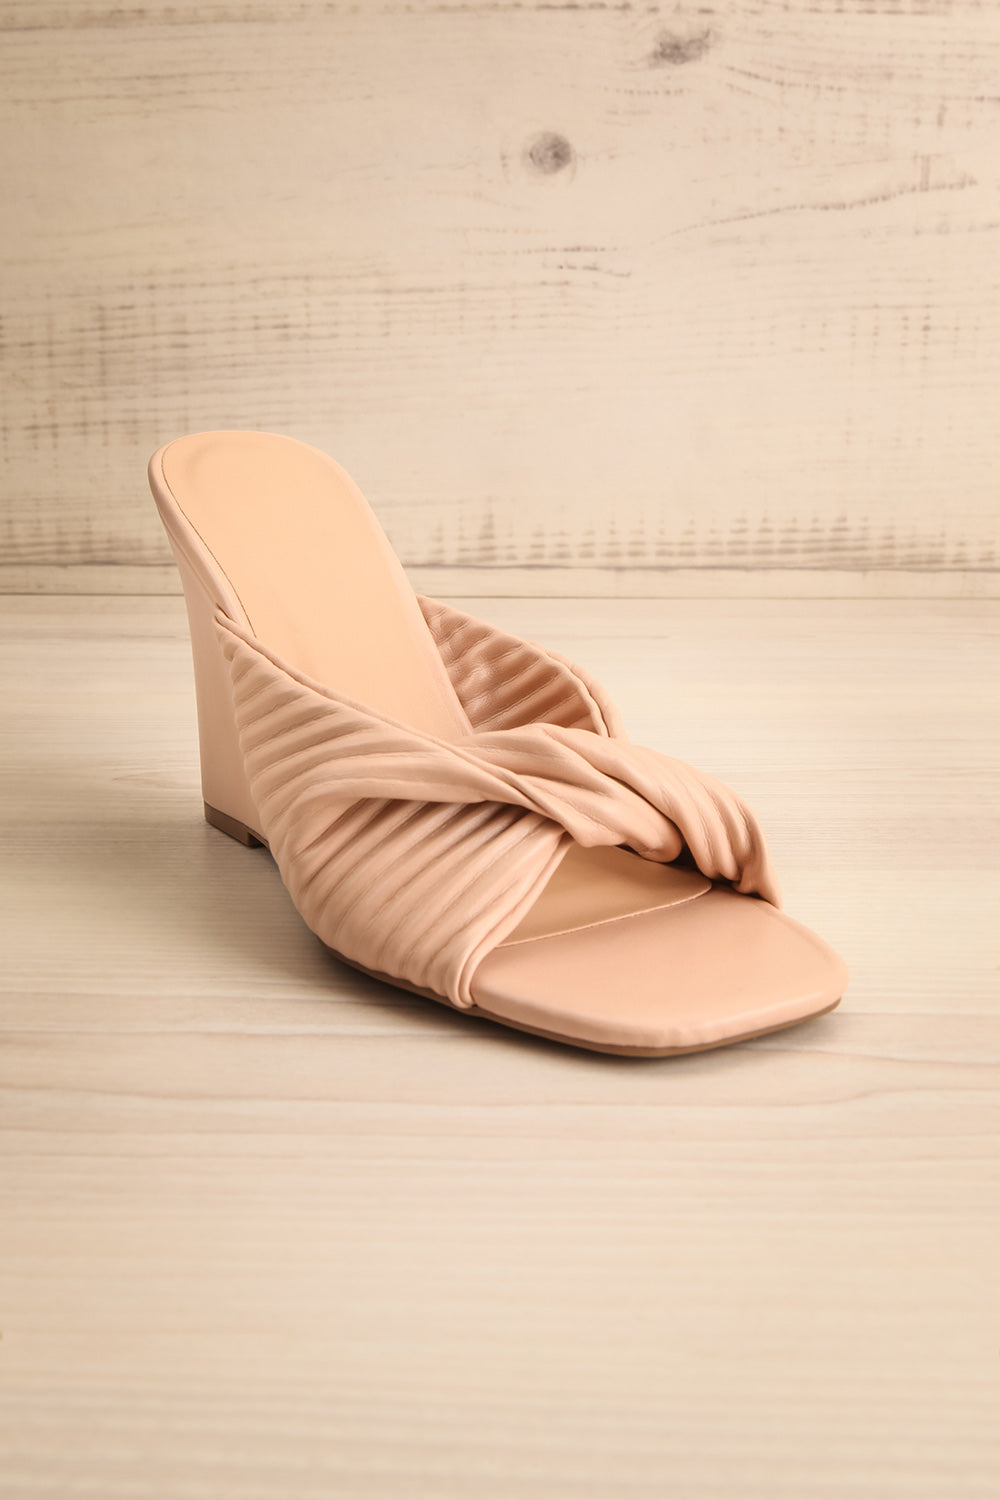 Ashai Beige Twist Front Wedge Sandals | La petite garçonne front view